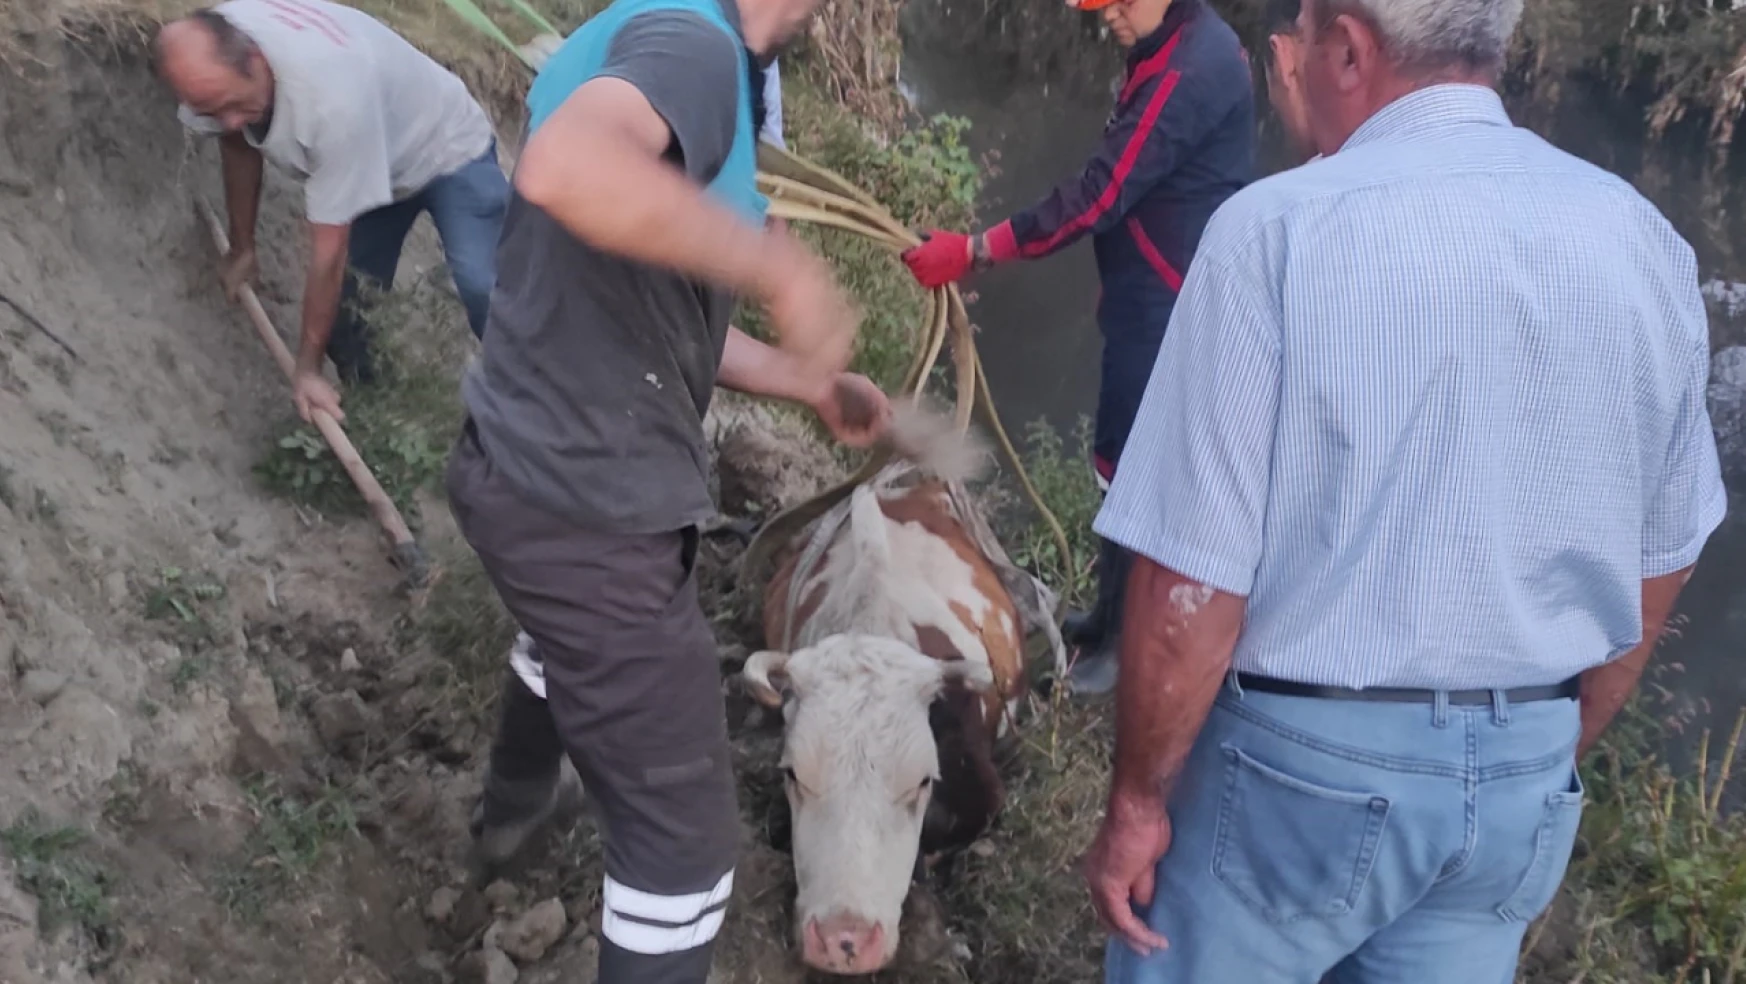 Derede mahsur kalan inek, vinç yardımıyla kurtarıldı